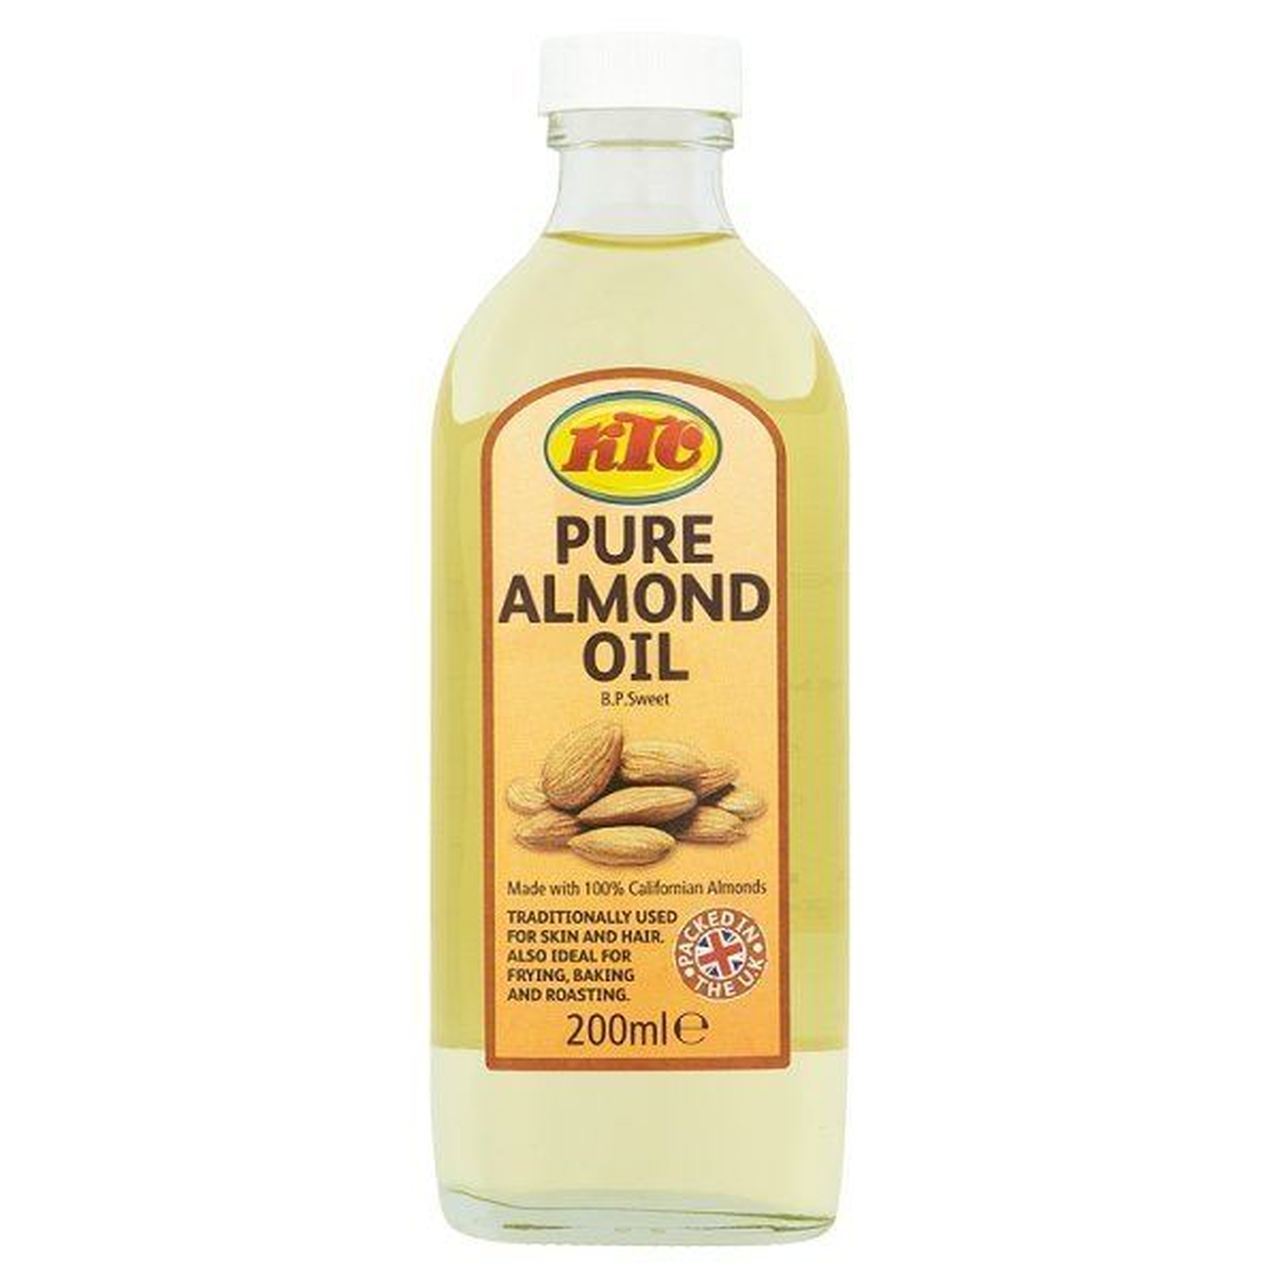 KTC Almond Oil 200ml - SaveCo Bradford